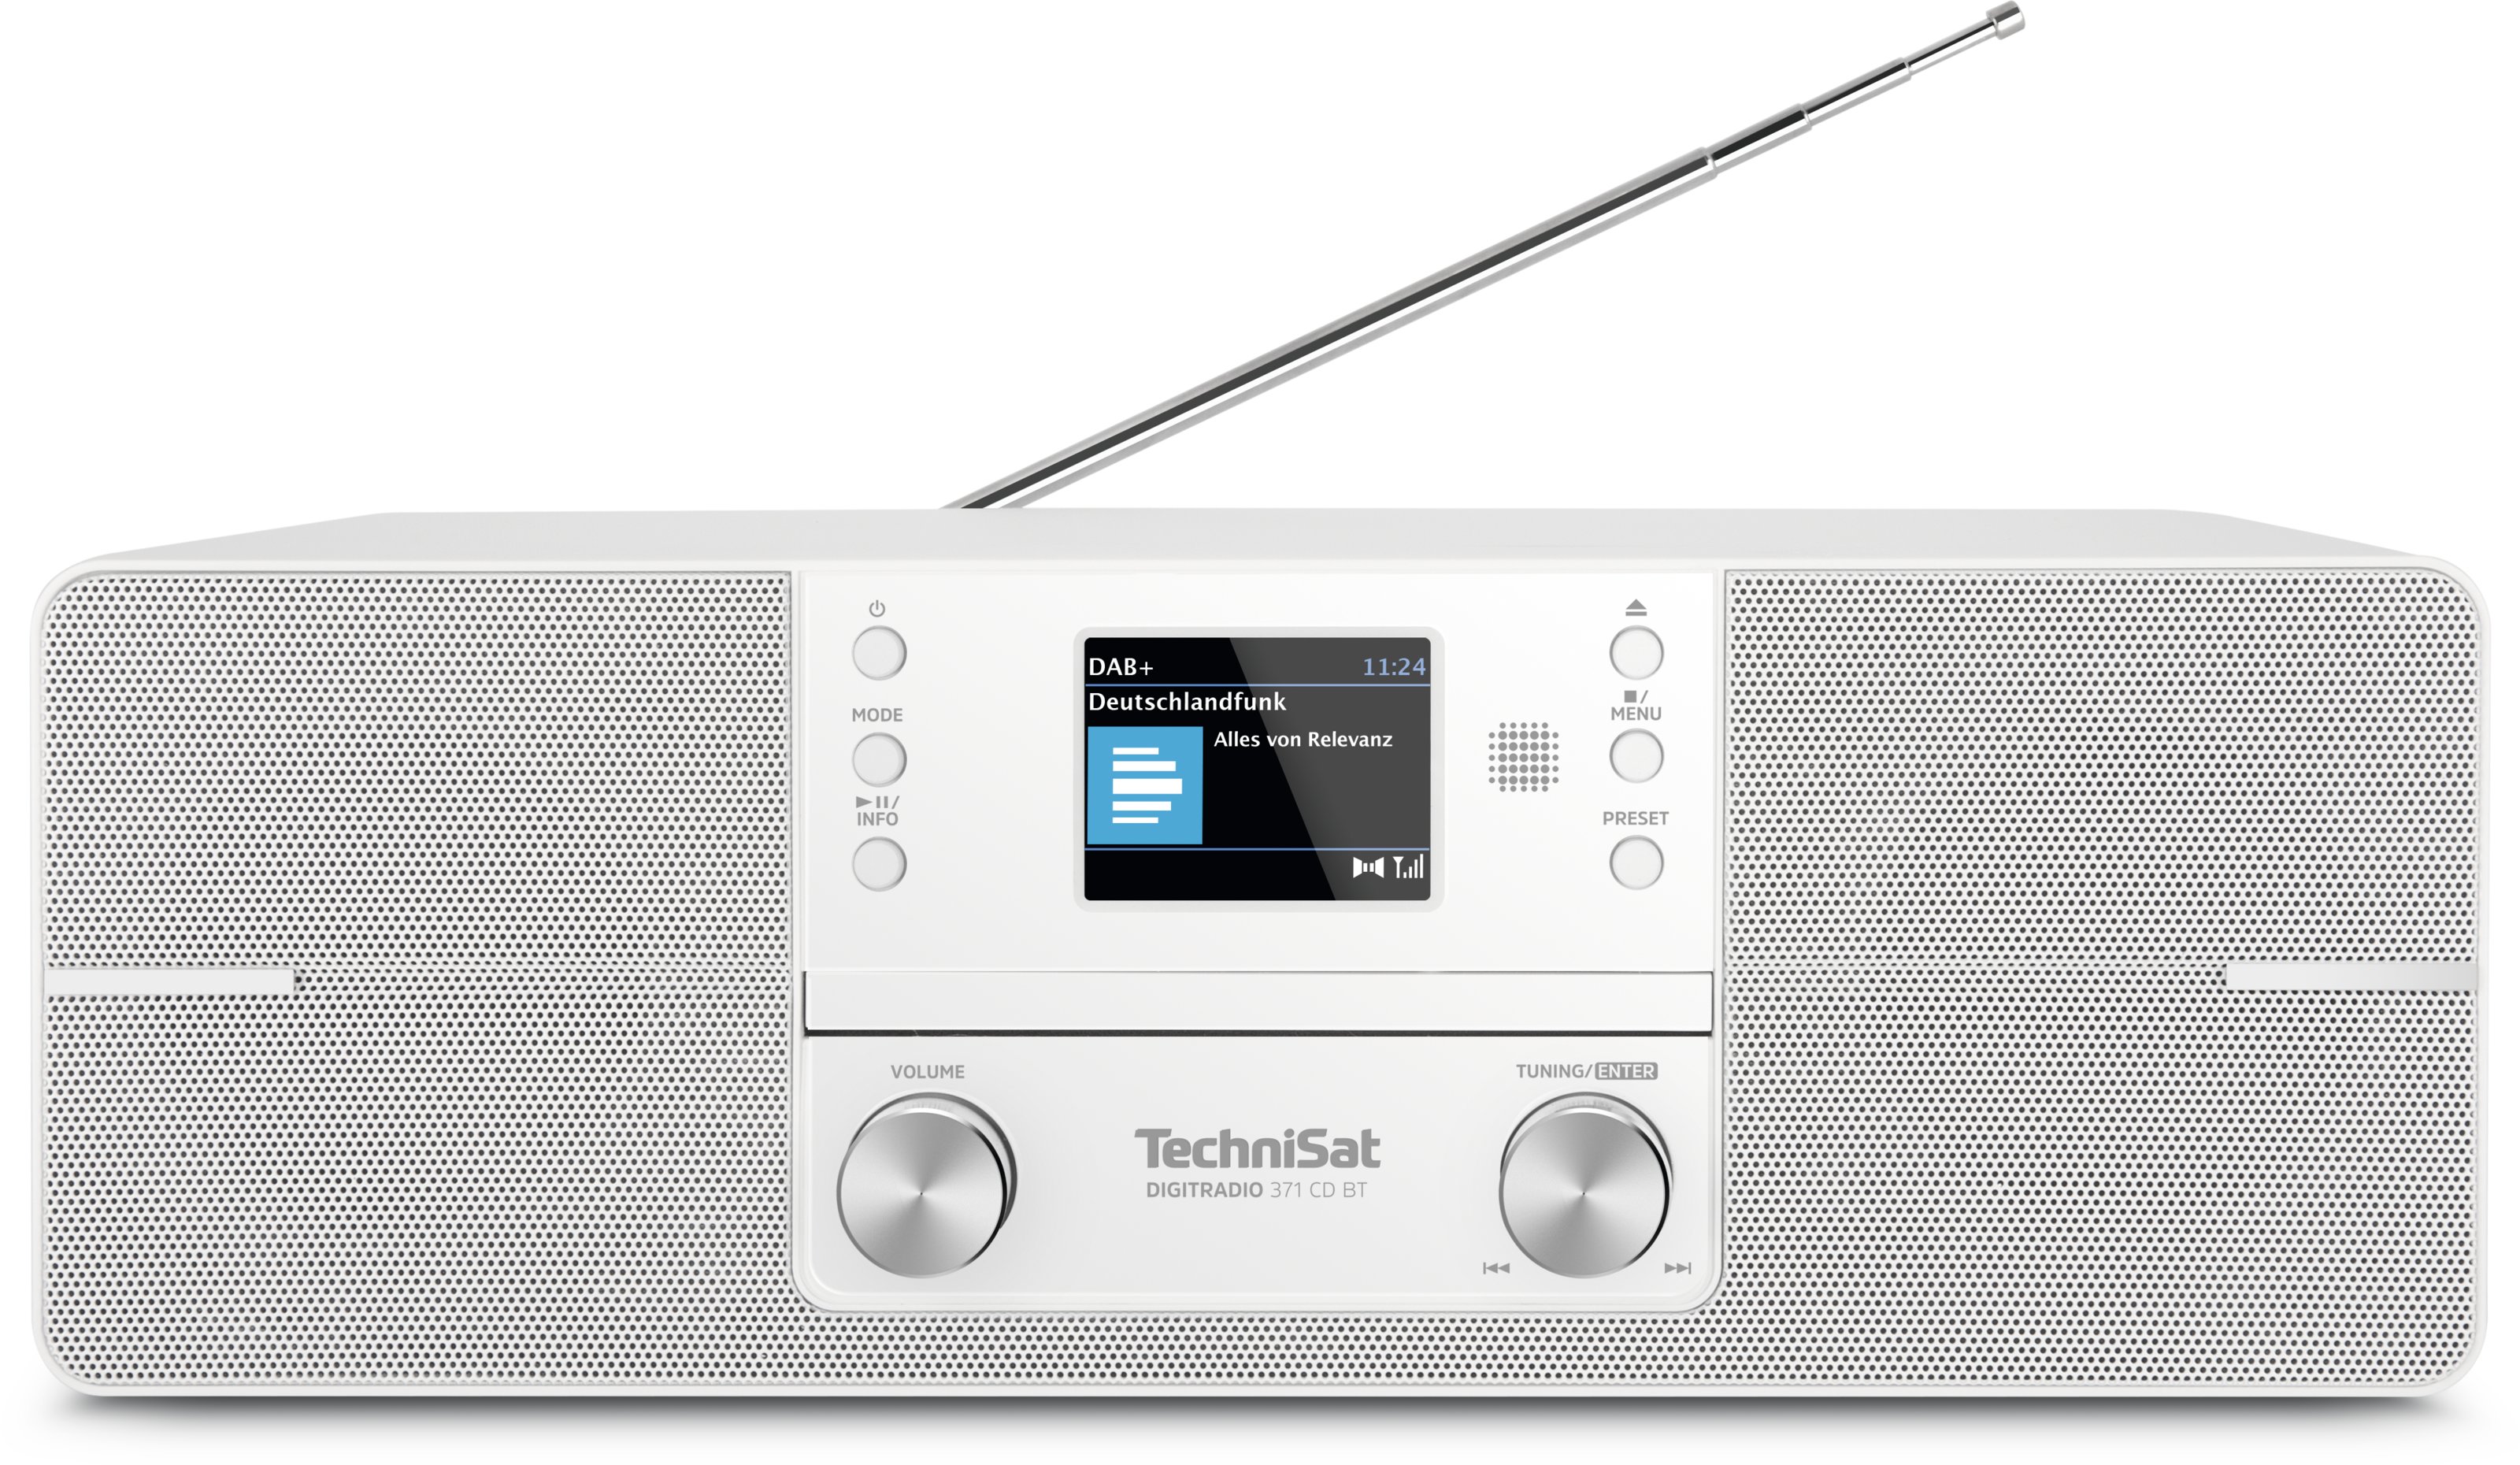 Audiosystem - CD 371 BT TechniSat DigitRadio